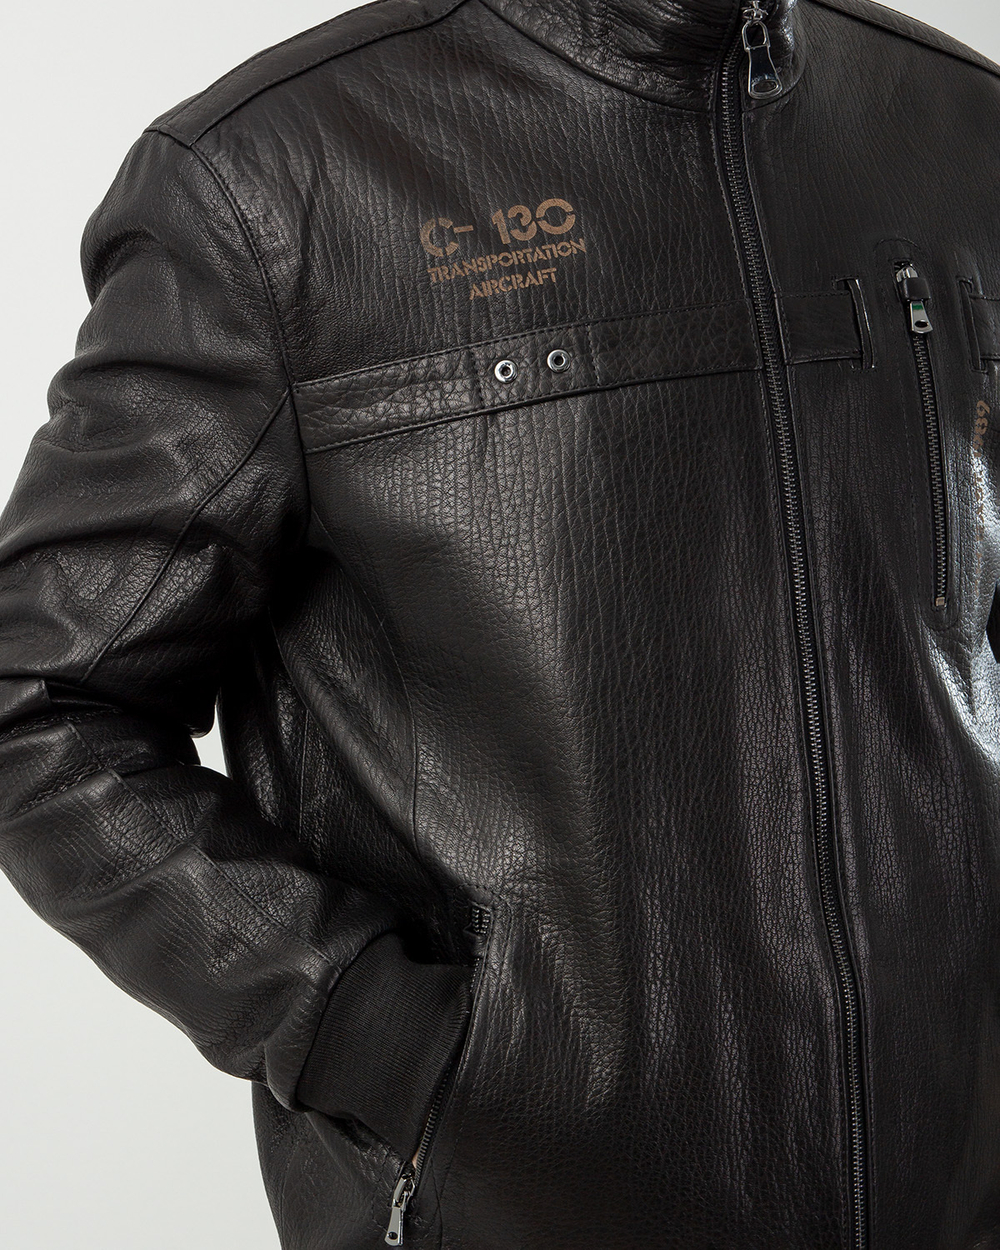 Куртка мужская GIO MELLI 782, черный